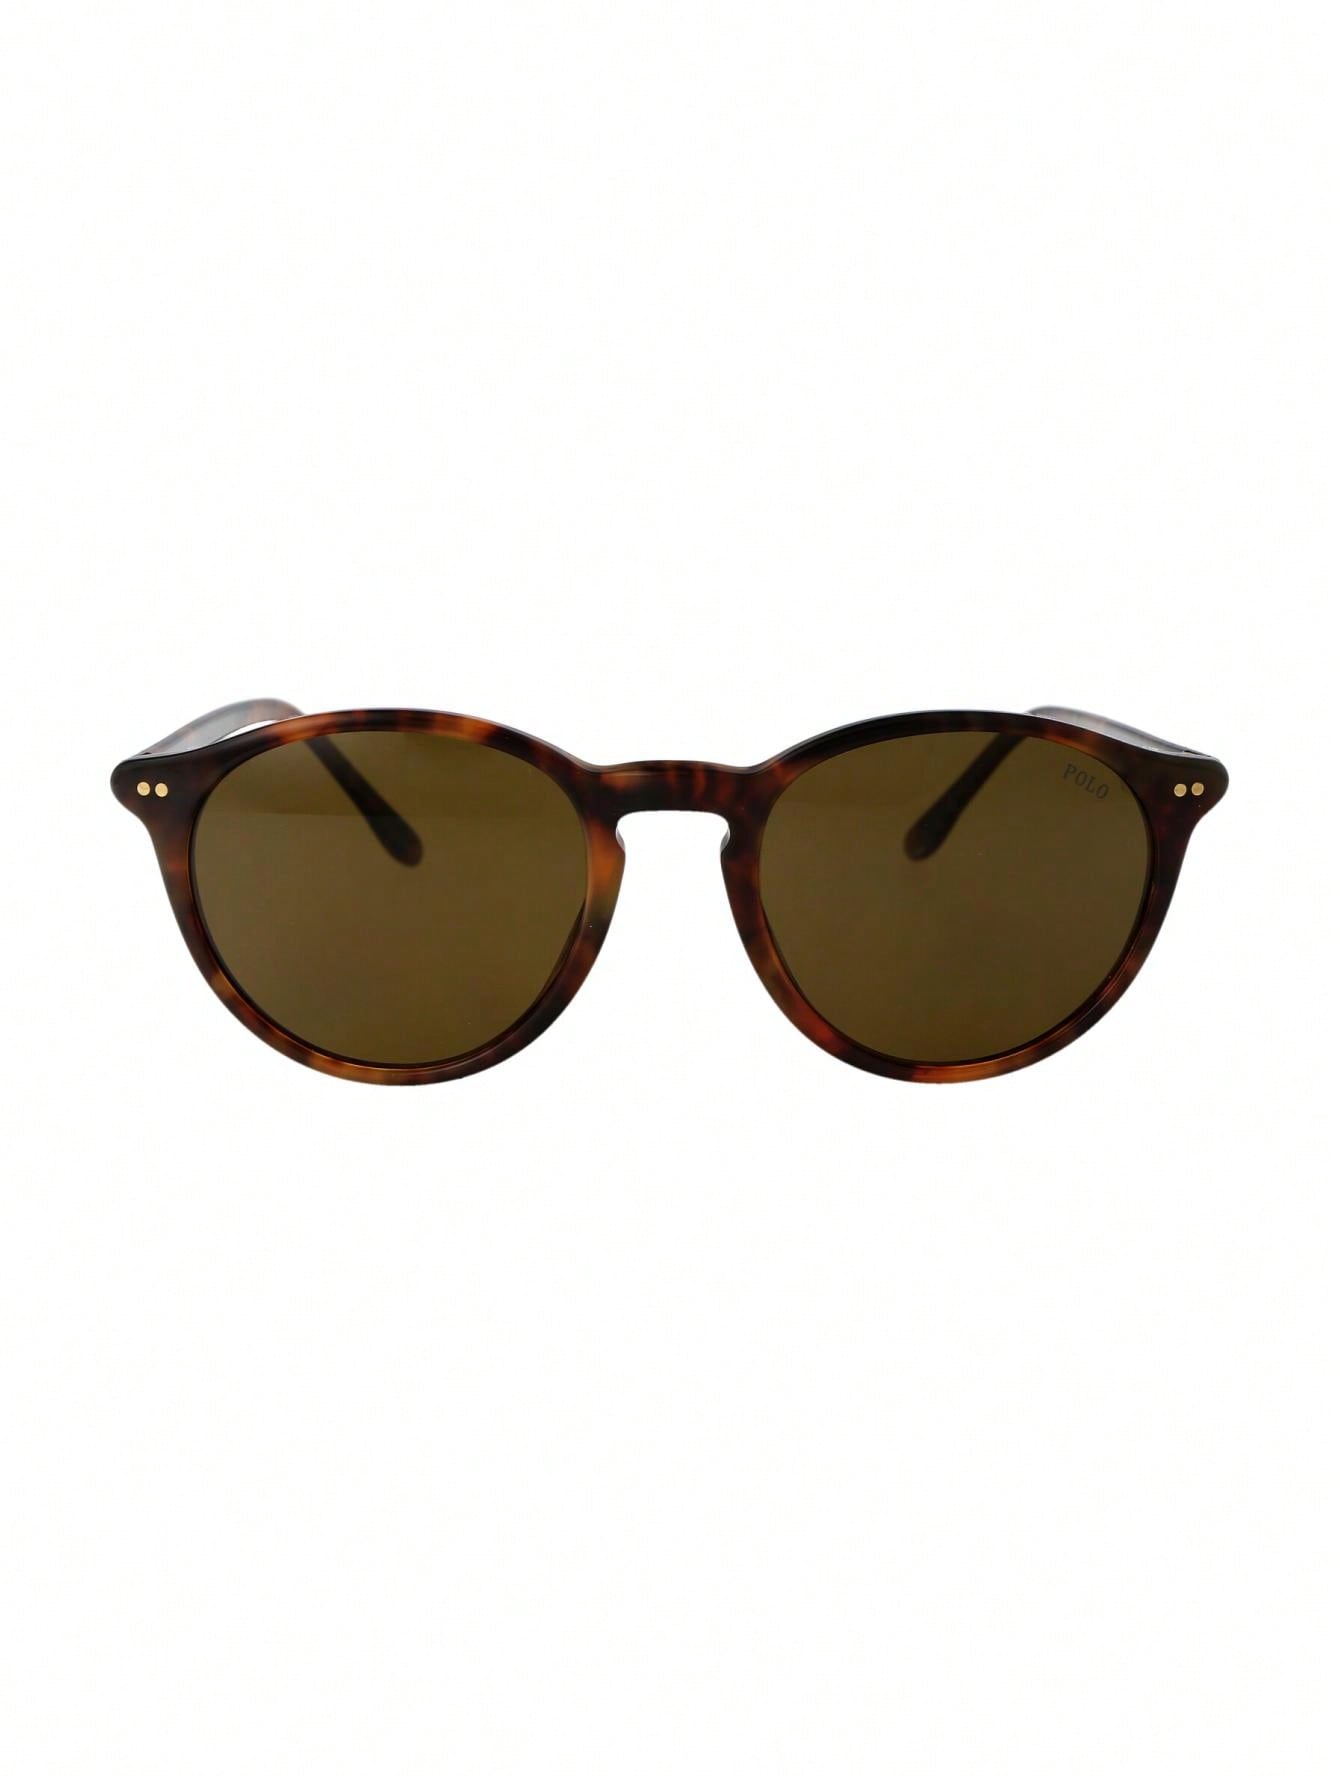 Мужские солнцезащитные очки Polo Ralph Lauren DECOR 0PH4193501773, многоцветный